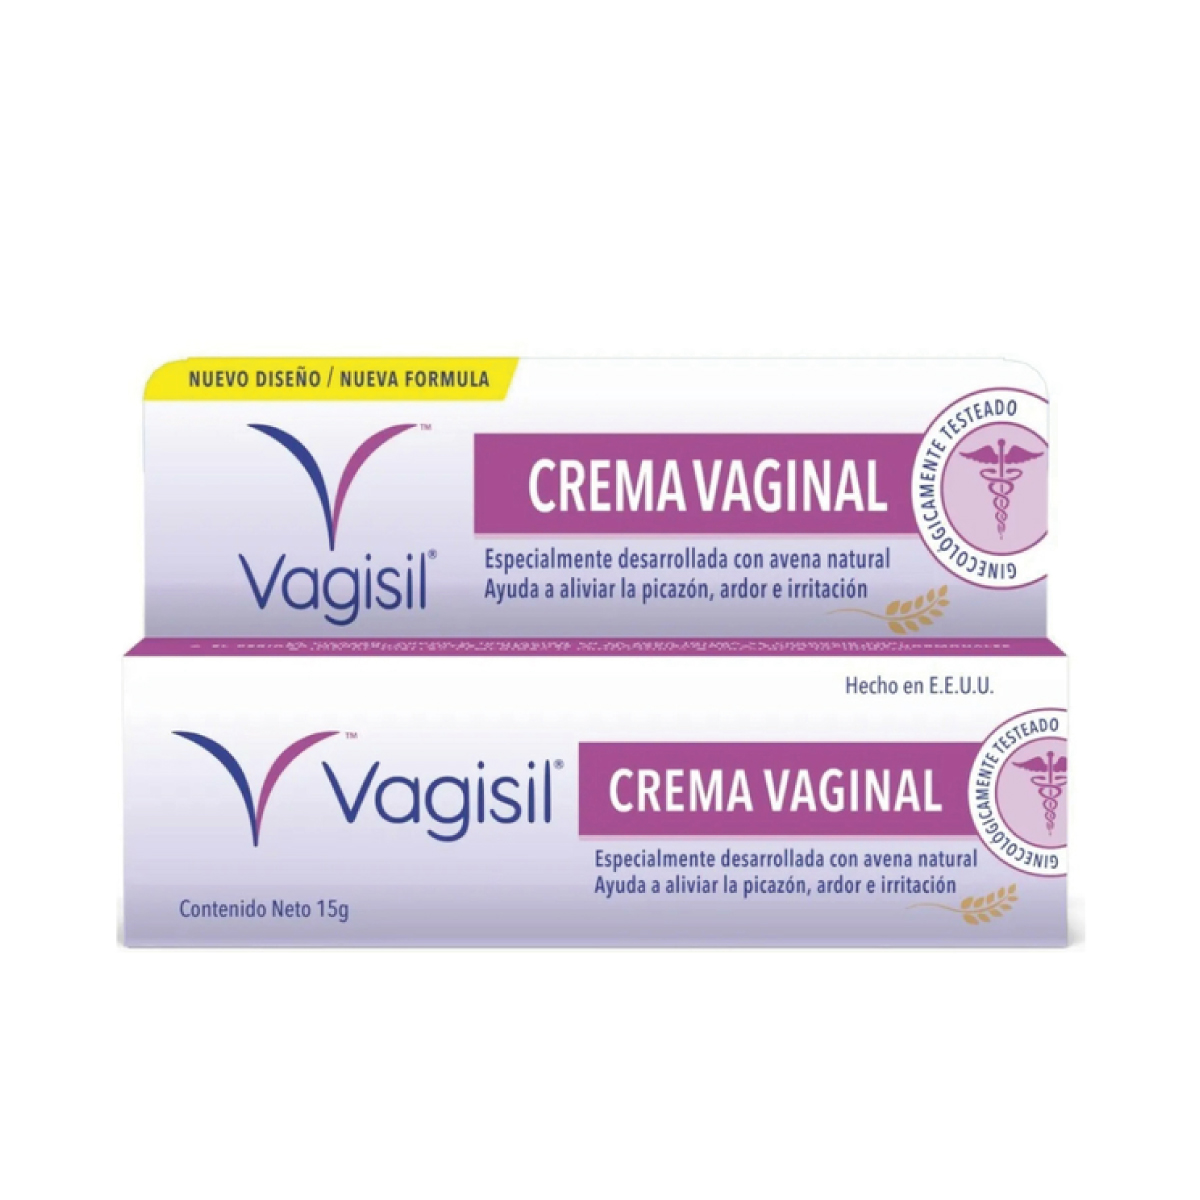 Compre nuestros productos de limpieza vaginal - Vagisil